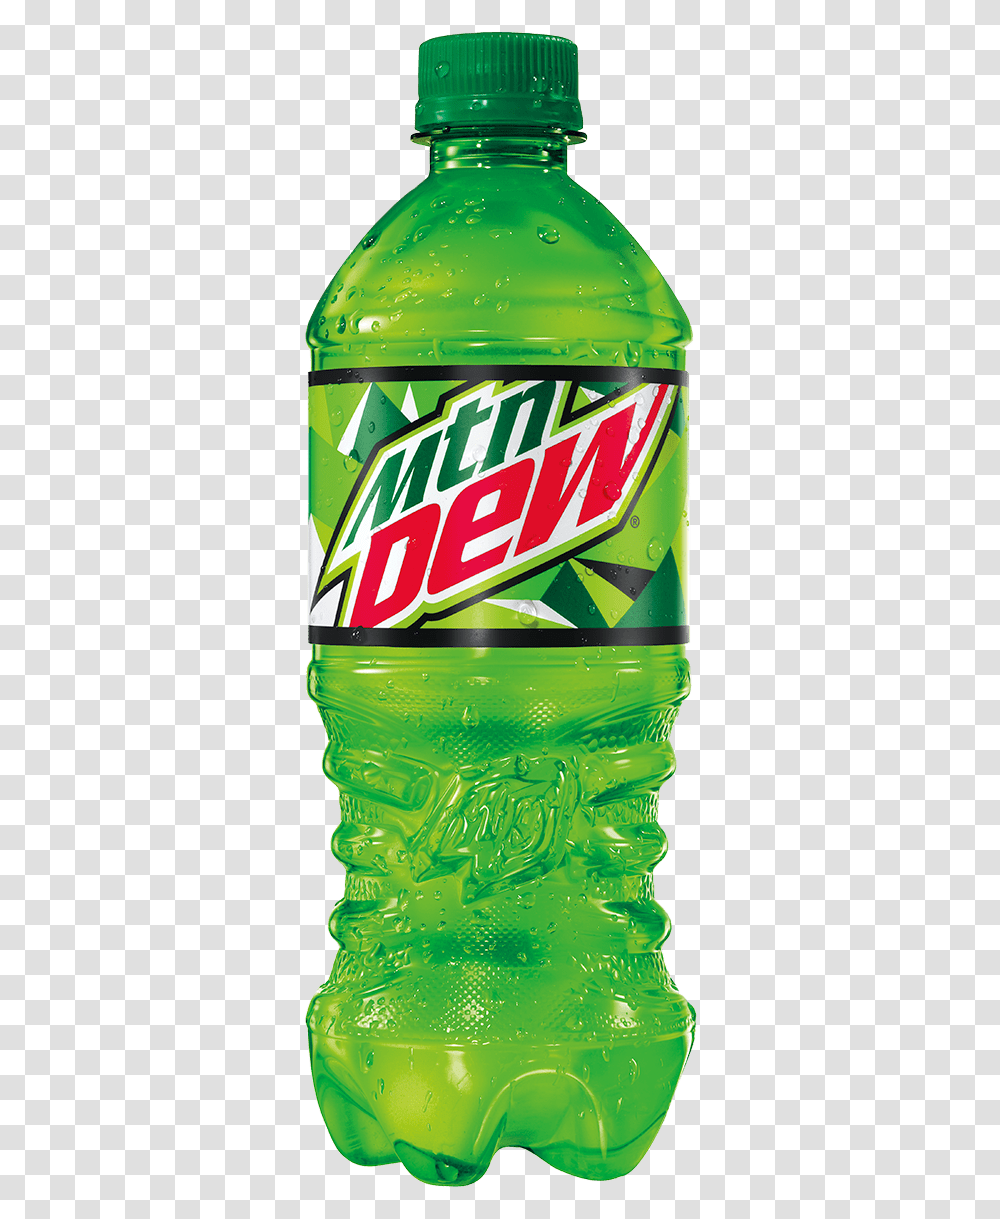 Bottle Of Mtn Dew, Beverage, Drink, Soda, Beer Transparent Png